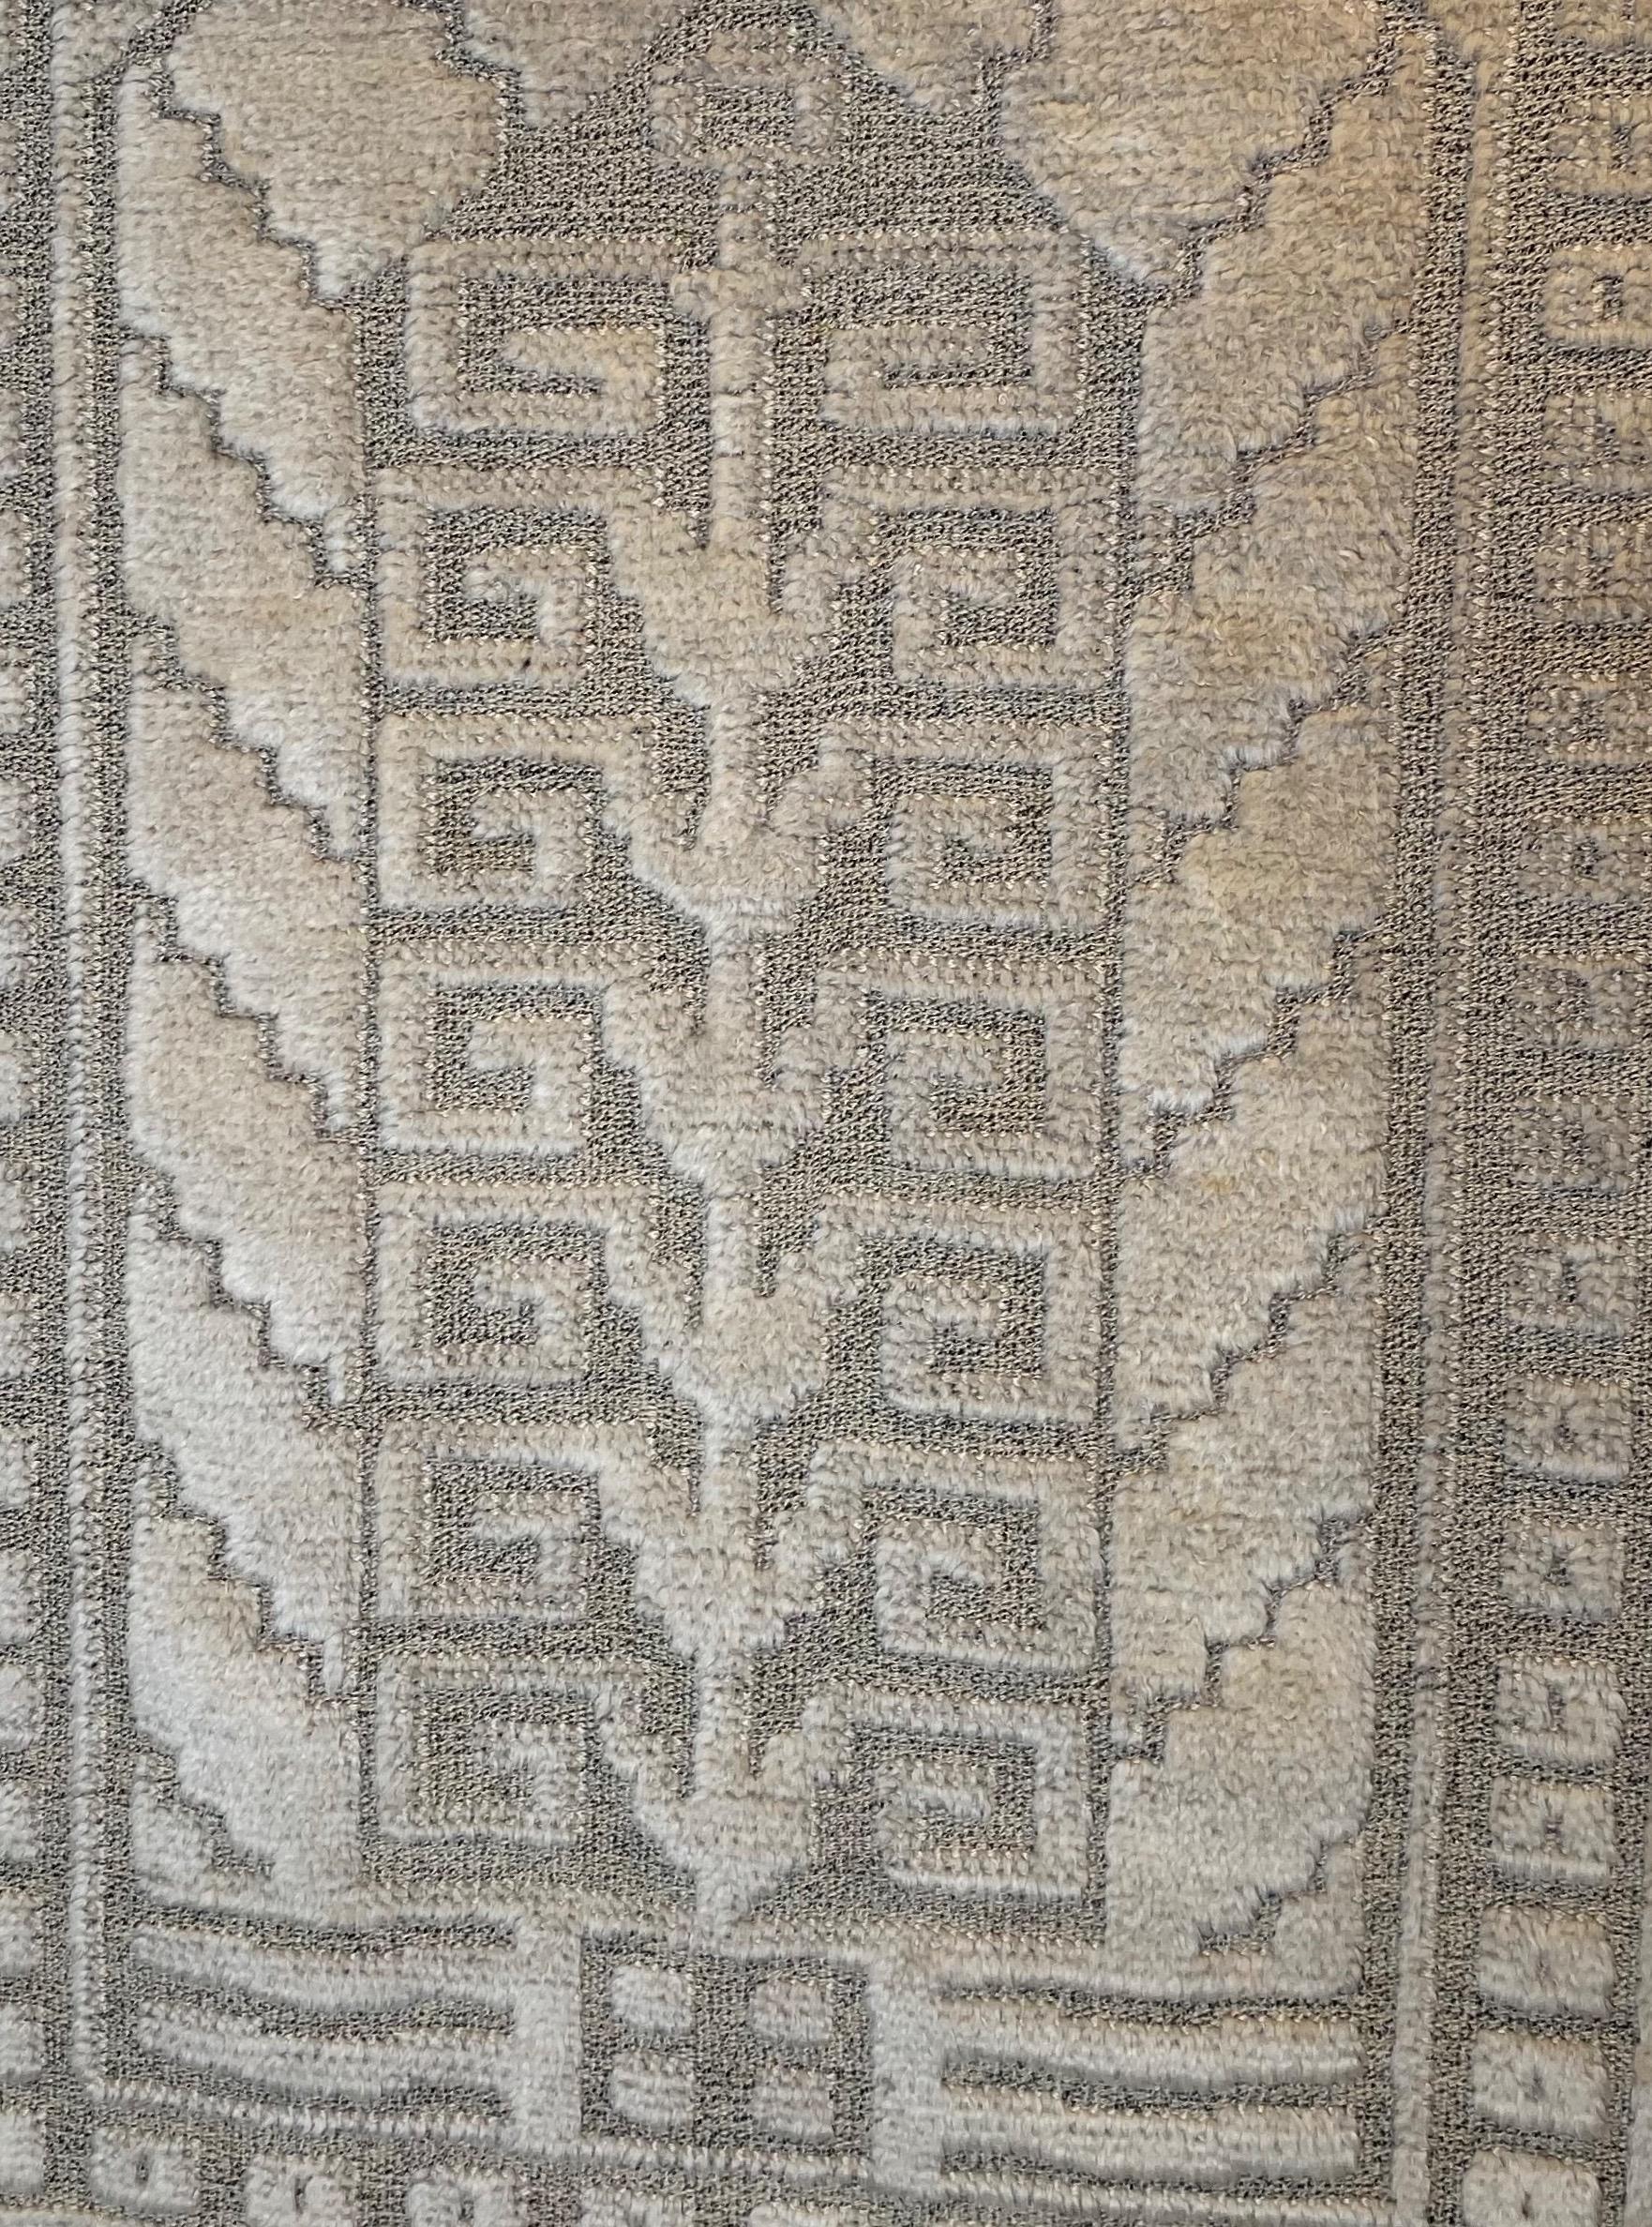 A carpet 